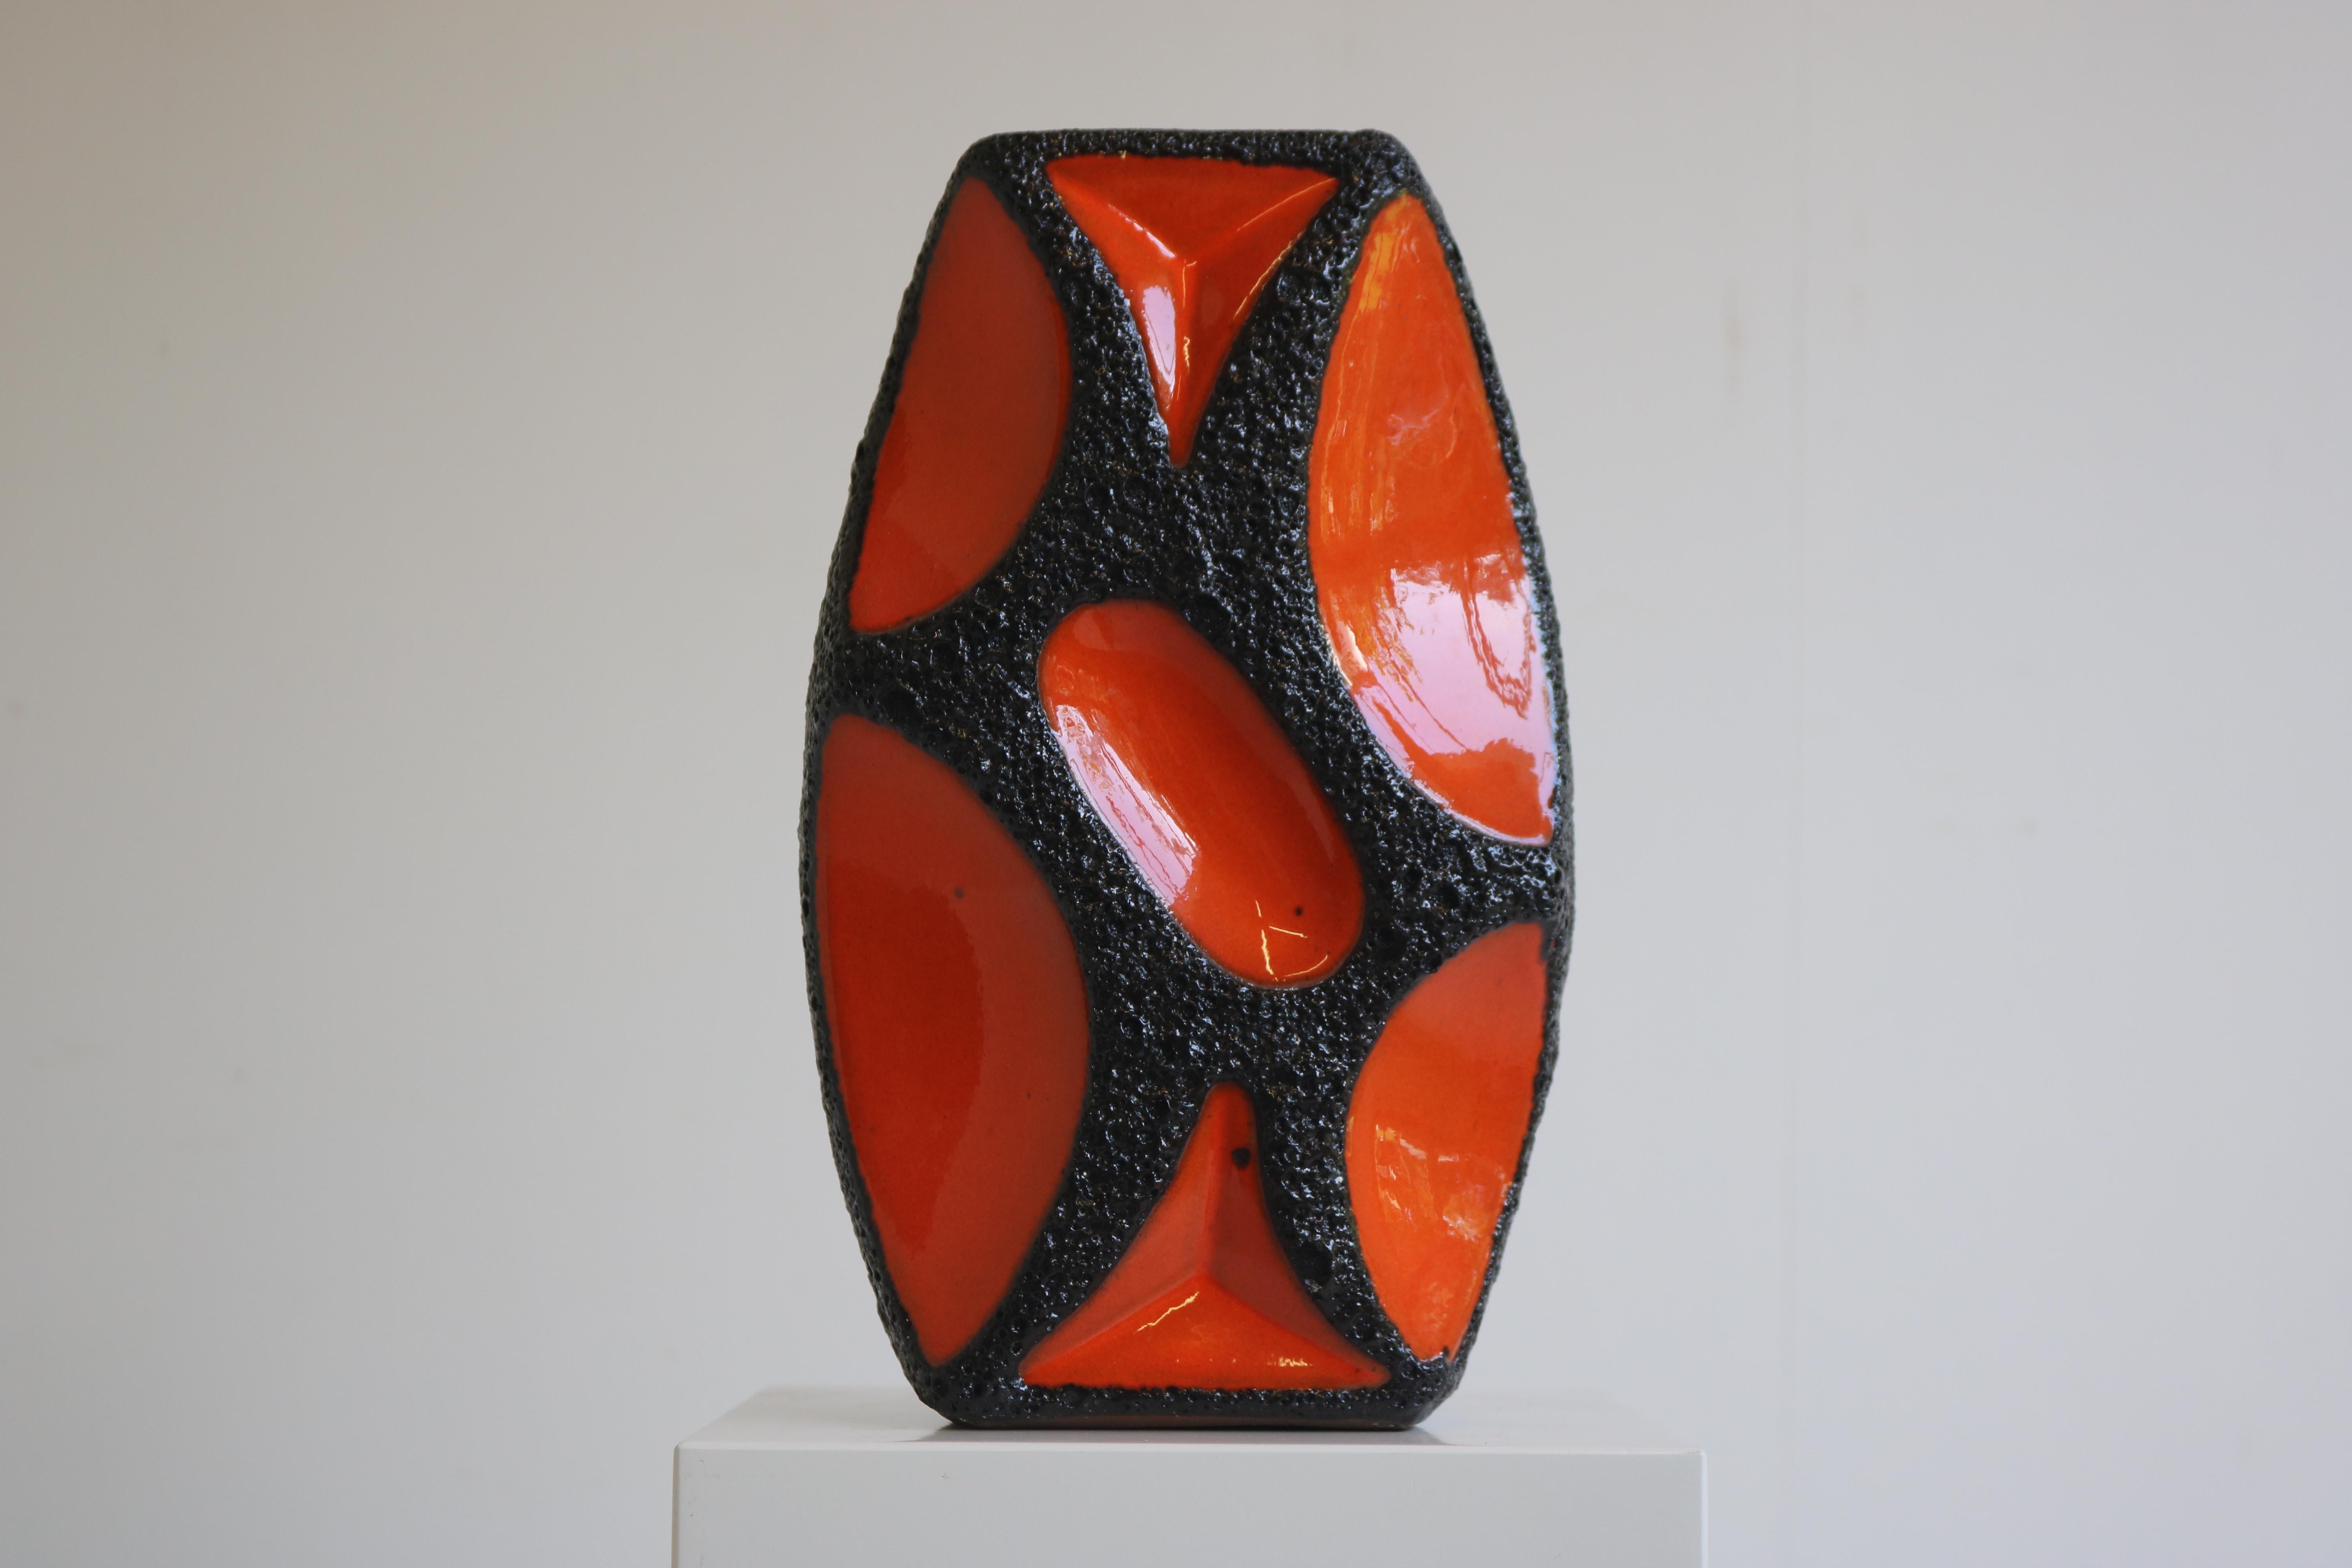 Vous êtes à la recherche d'une pièce d'apparat qui mettra en valeur votre style unique ? Ne cherchez pas plus loin que ce fabuleux vase orange Fat lava de Roth Keramik datant de 1970 !
Fabriqué en céramique de haute qualité, ce vase est sûr de